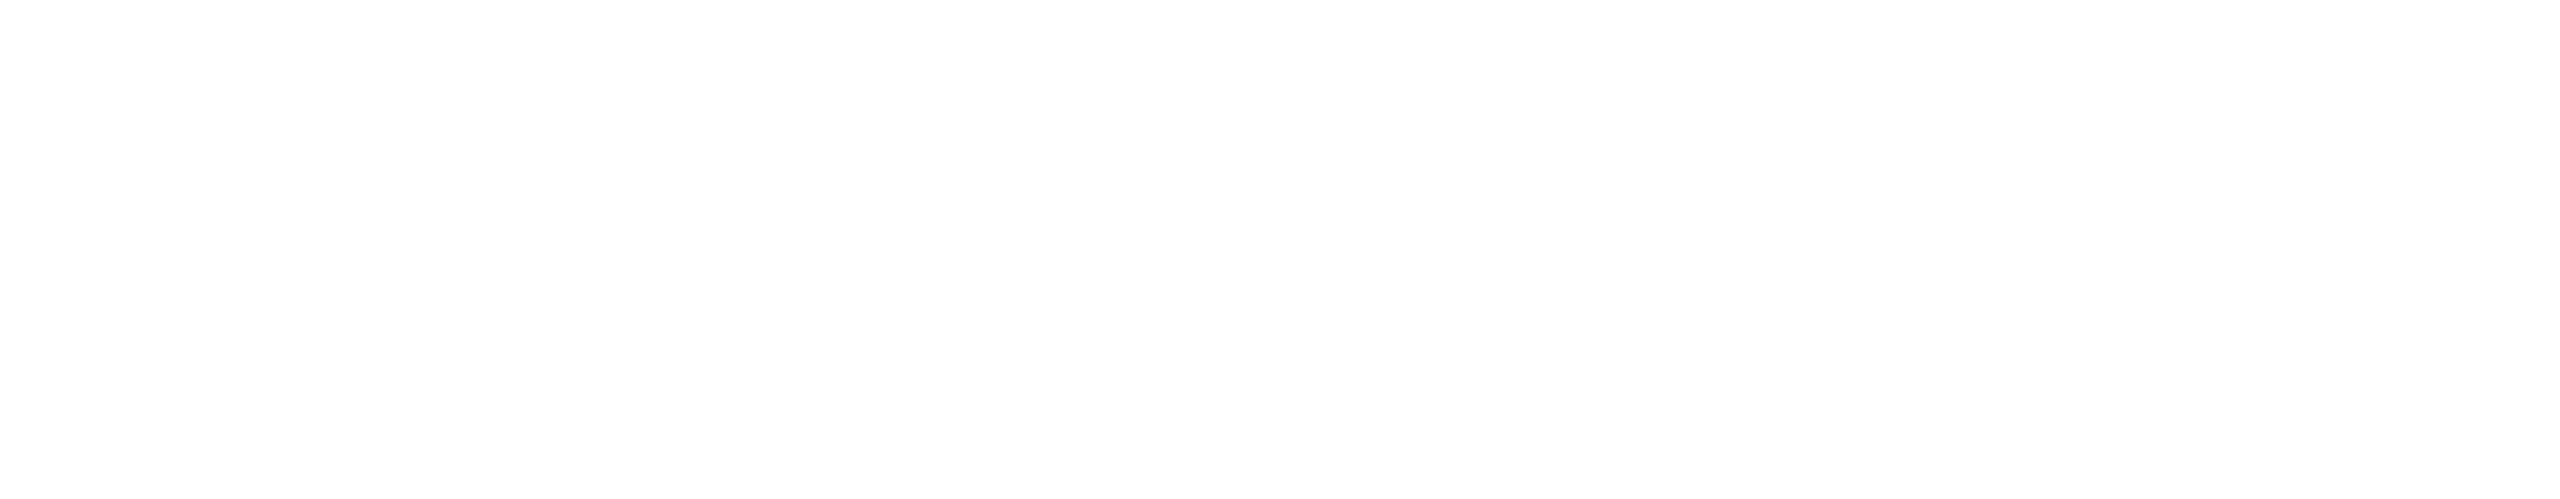 Vøringfoss Hotel Logo